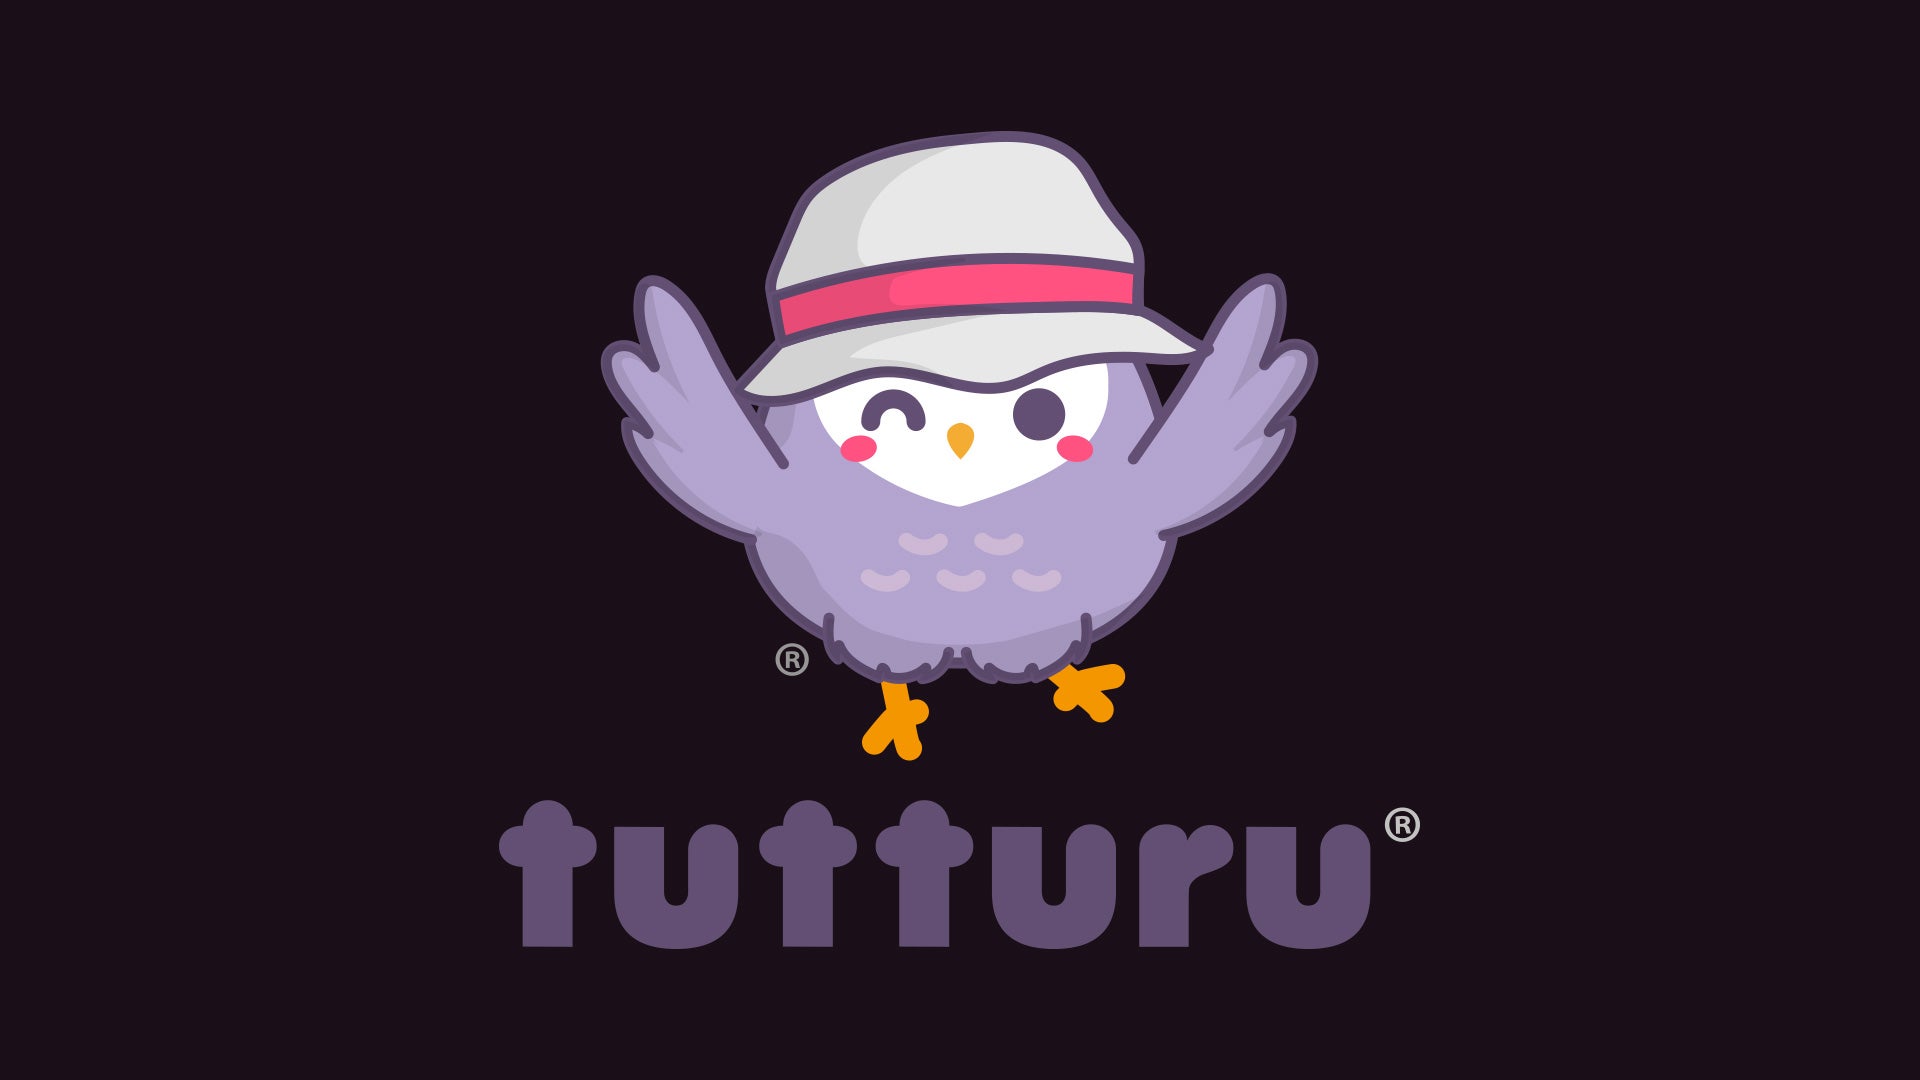 Tutturu logo with a bird wearing a hat